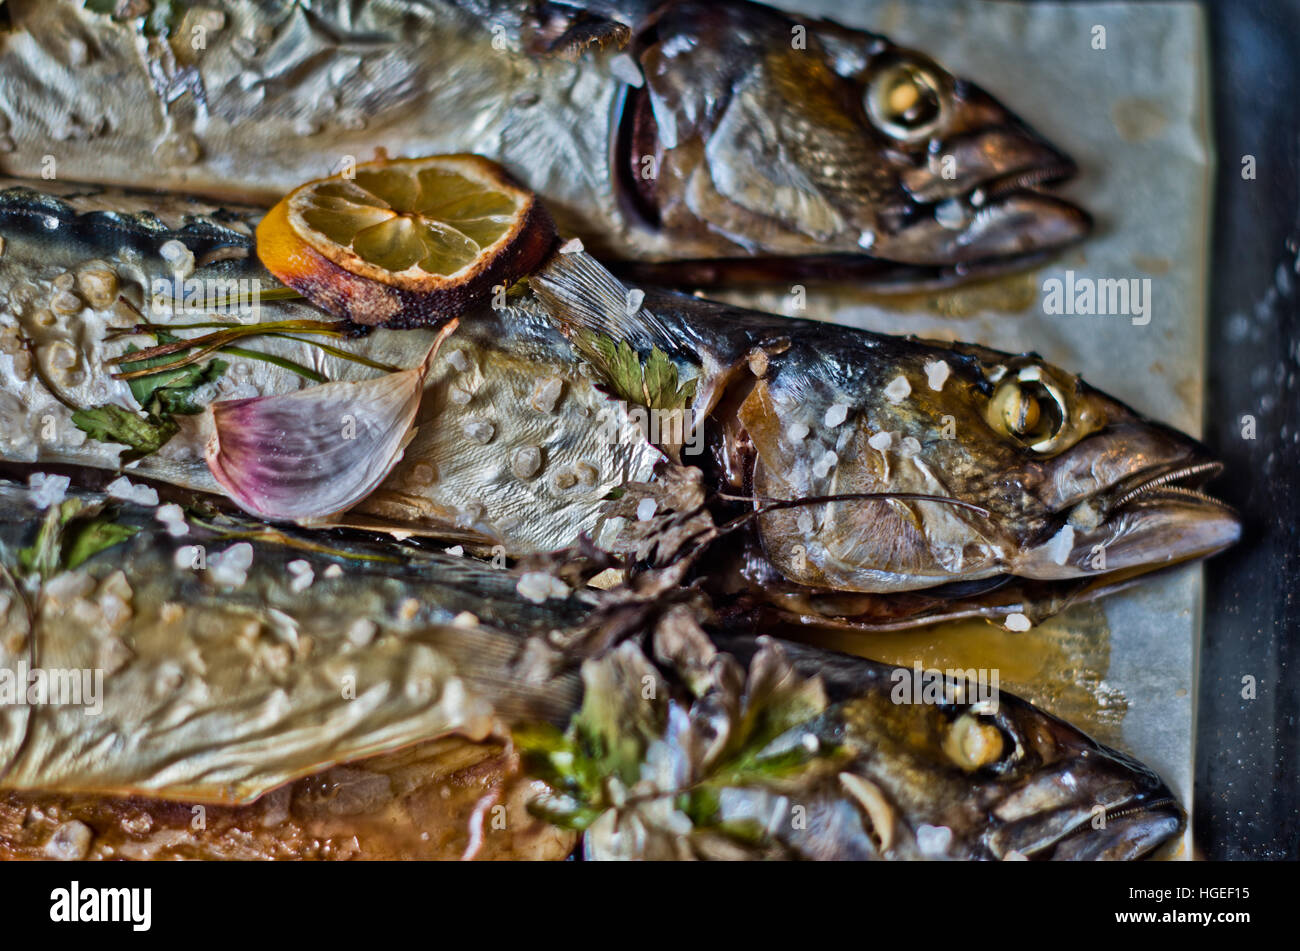 Eccellente fresca pesce blu per una dieta sana cucinata fresca con olio d'oliva, succo di limone e le erbe aromatiche Foto Stock